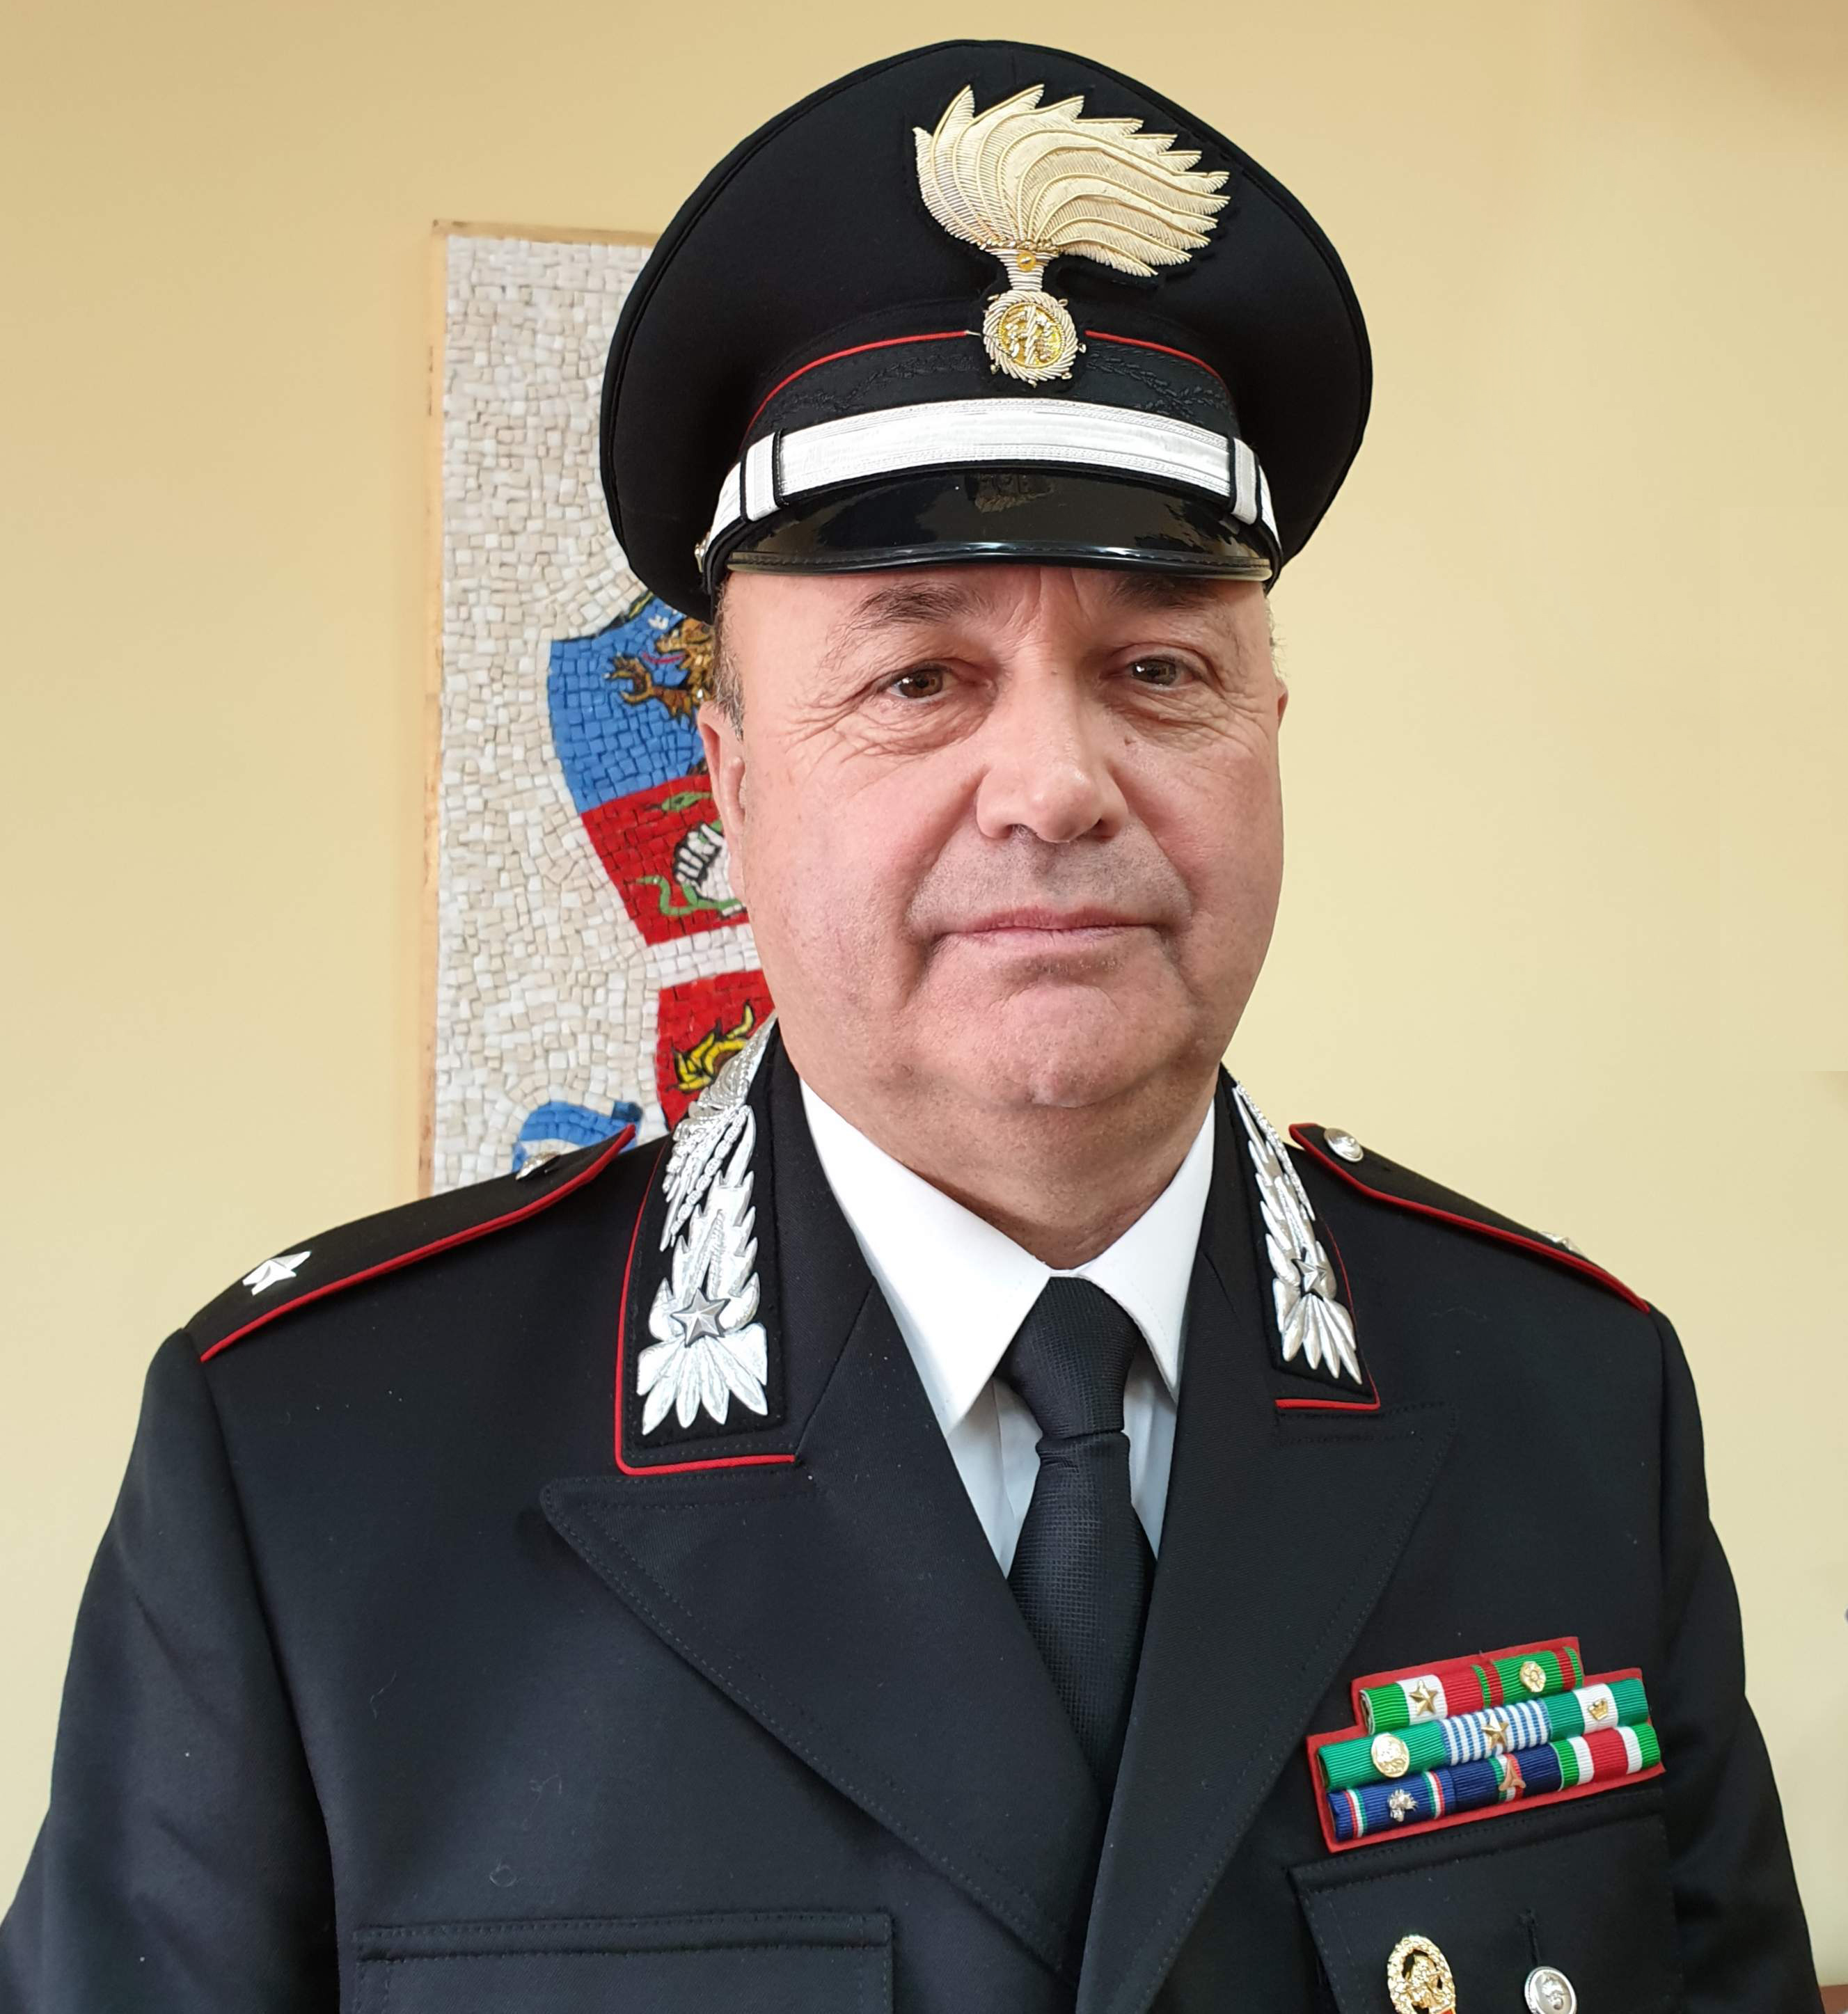 Montella| Carabinieri, il sottotenente Vietri alla guida del Nucleo Operativo e Radiomobile